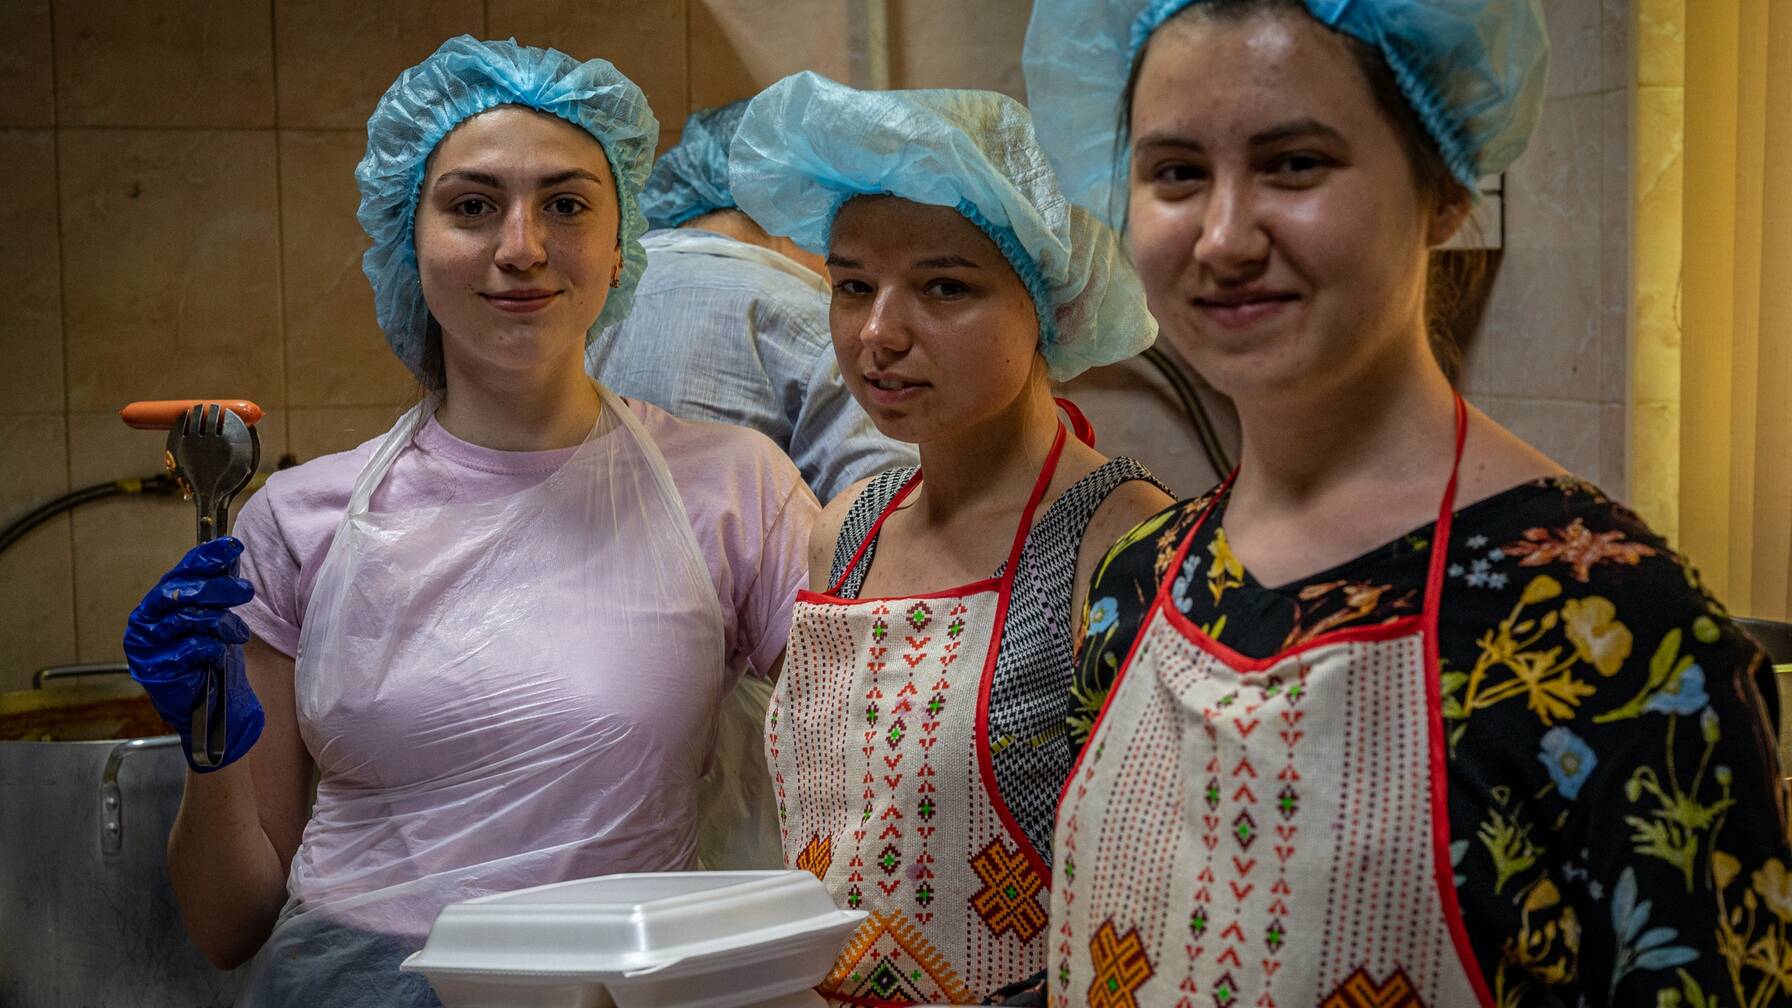 Des milliers de bénévoles, dont beaucoup ont eux-mêmes pris la fuite, se mobilisent quotidiennement aux côtés de Caritas en Ukraine et dans les pays voisins. Par exemple en servant des repas chauds.